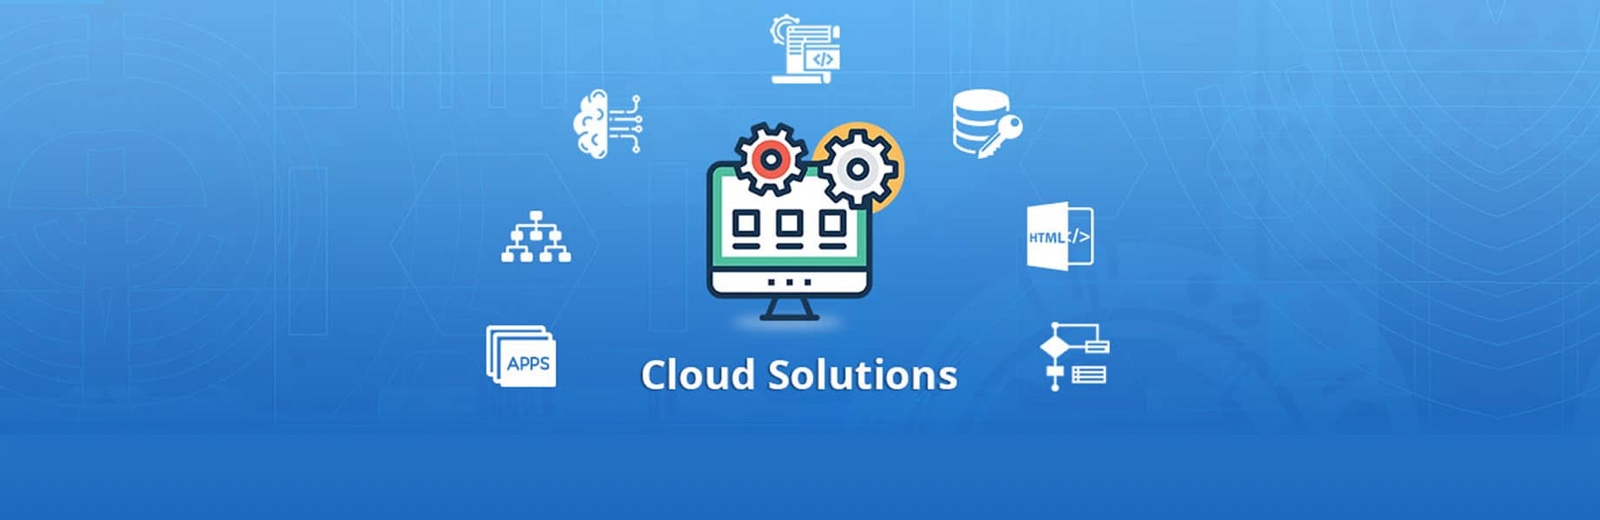 cloud-solution-services